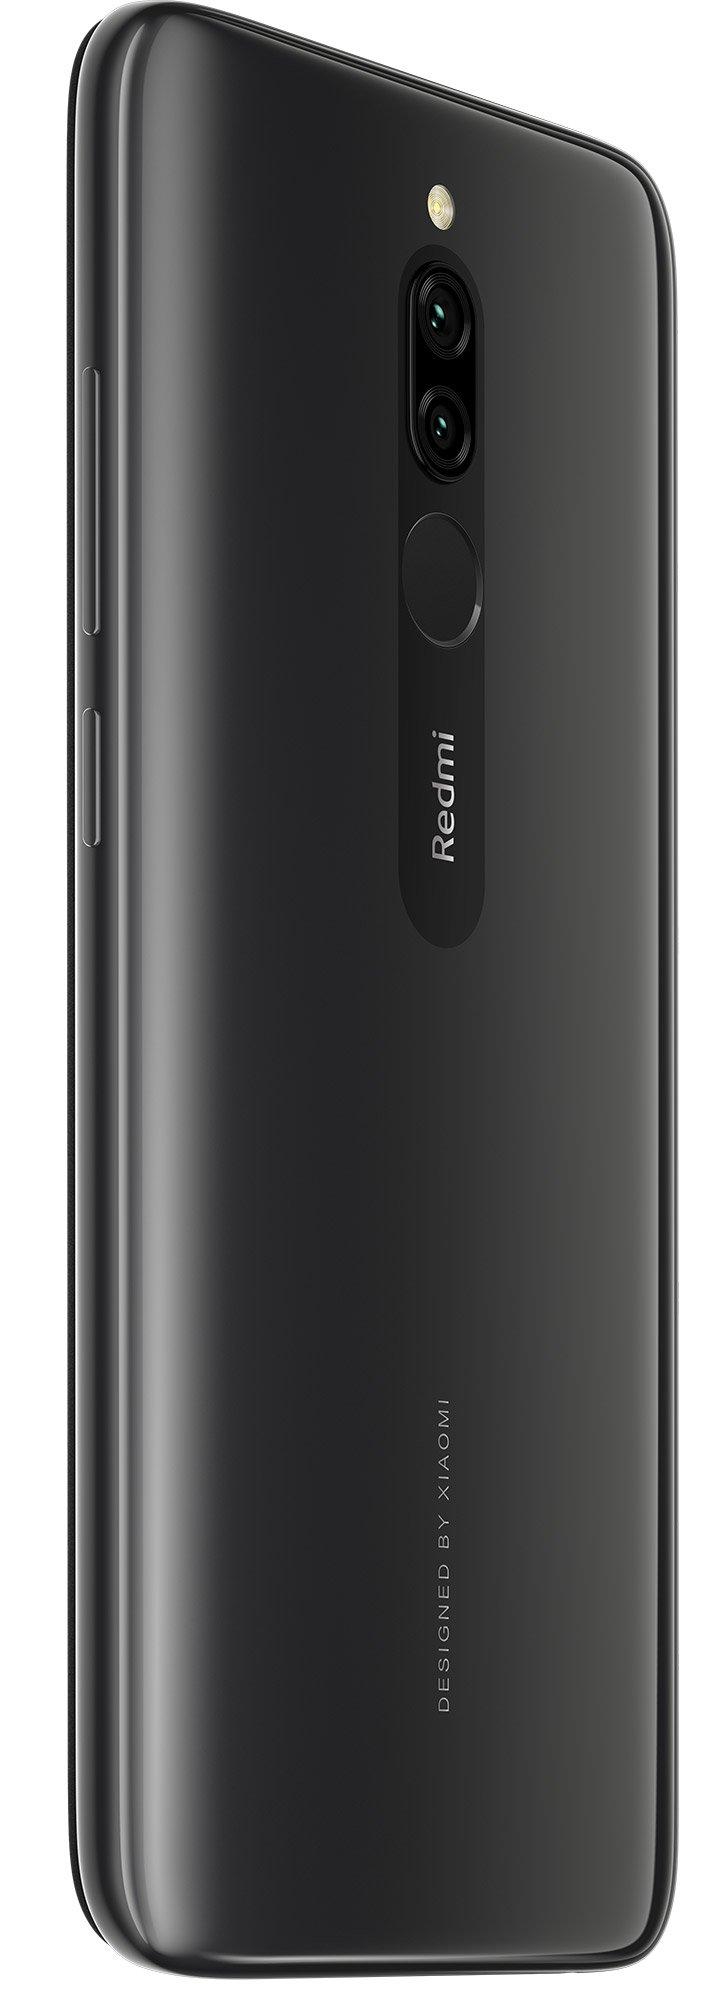 Купить Смартфон Xiaomi Redmi 8 3/32Gb Onyx Black